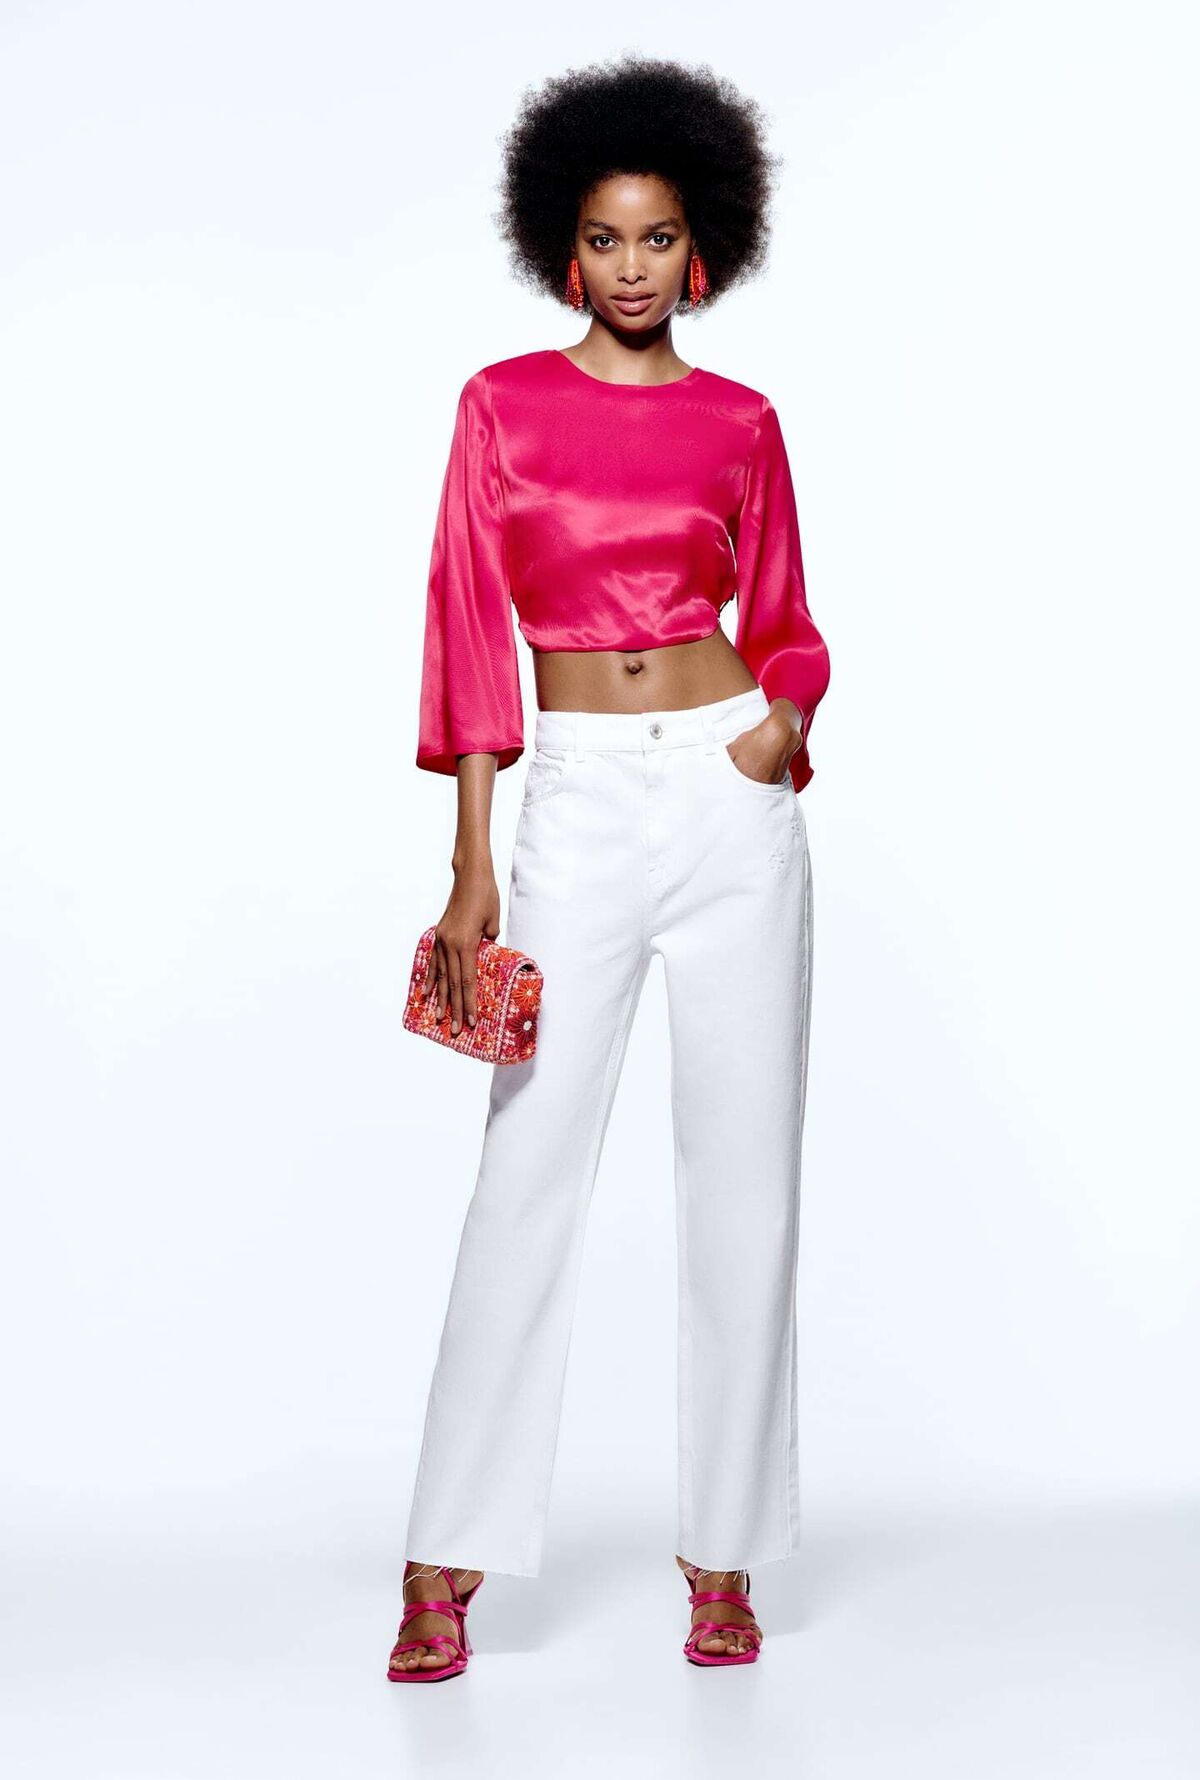 la definitiva verano 2022: pantalones blancos y blusa rosa